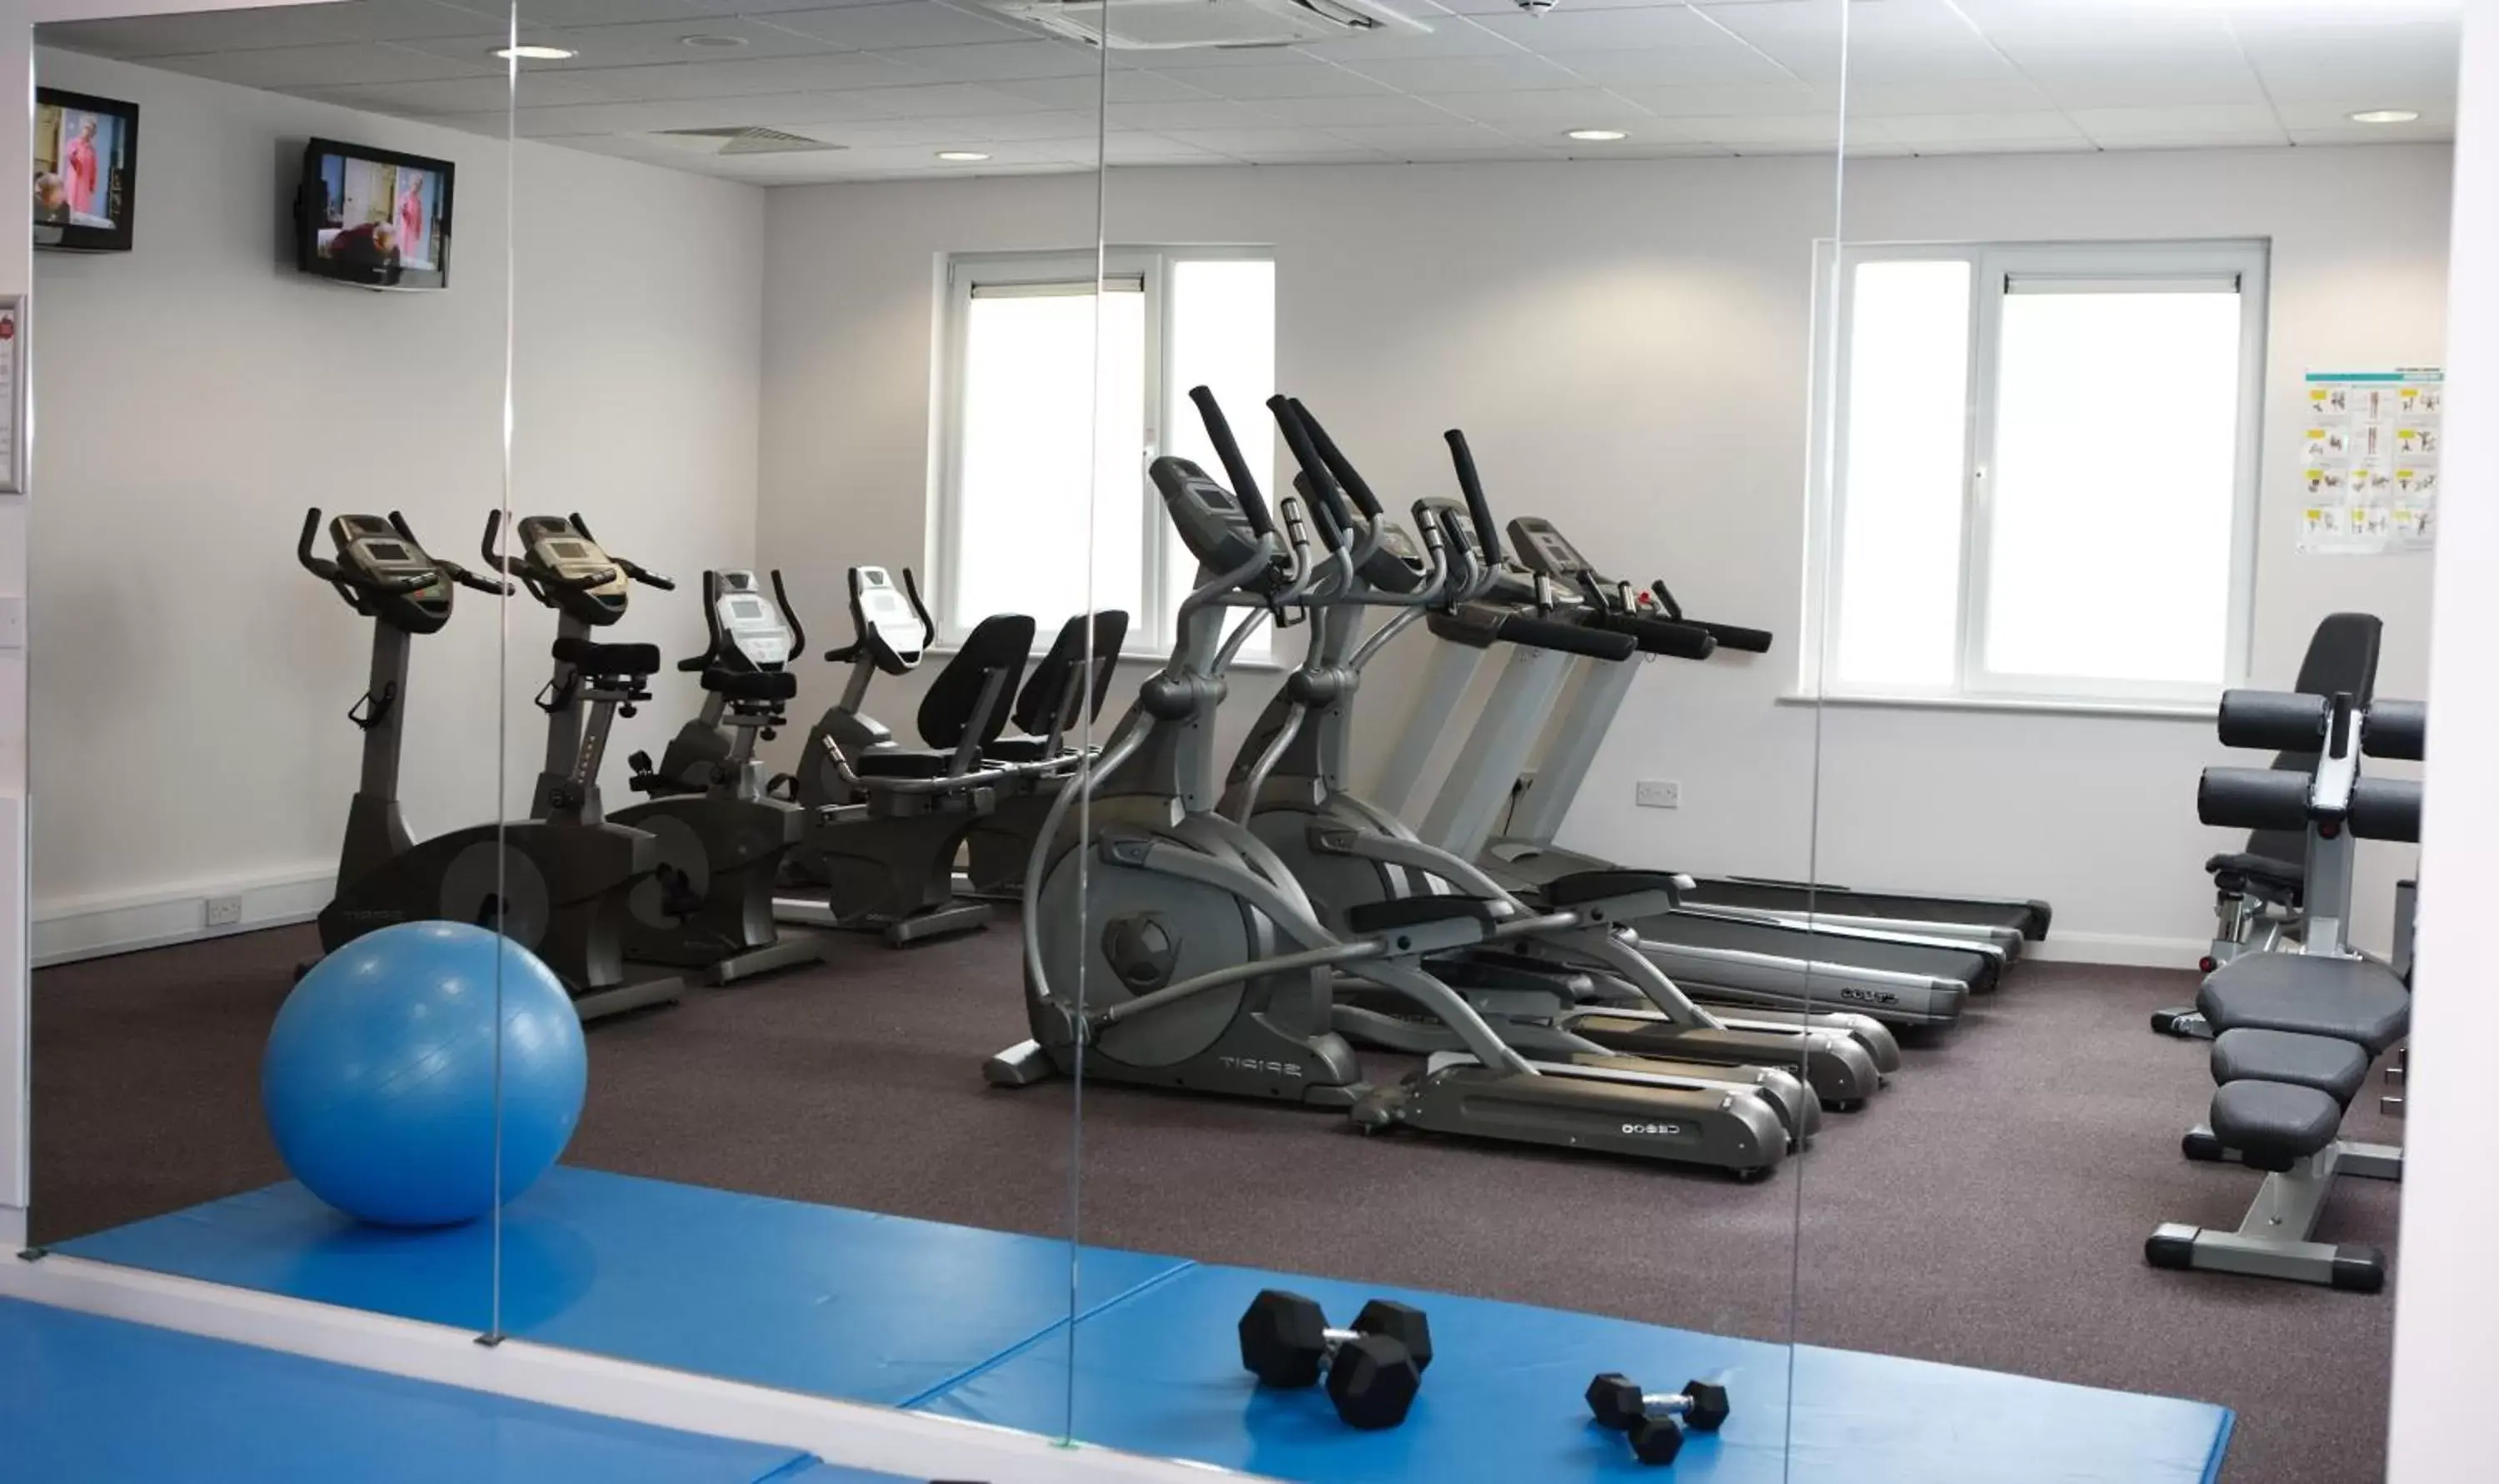 Fitness centre/facilities, Fitness Center/Facilities in Leonardo Hotel Bradford - formerly Jurys Inn